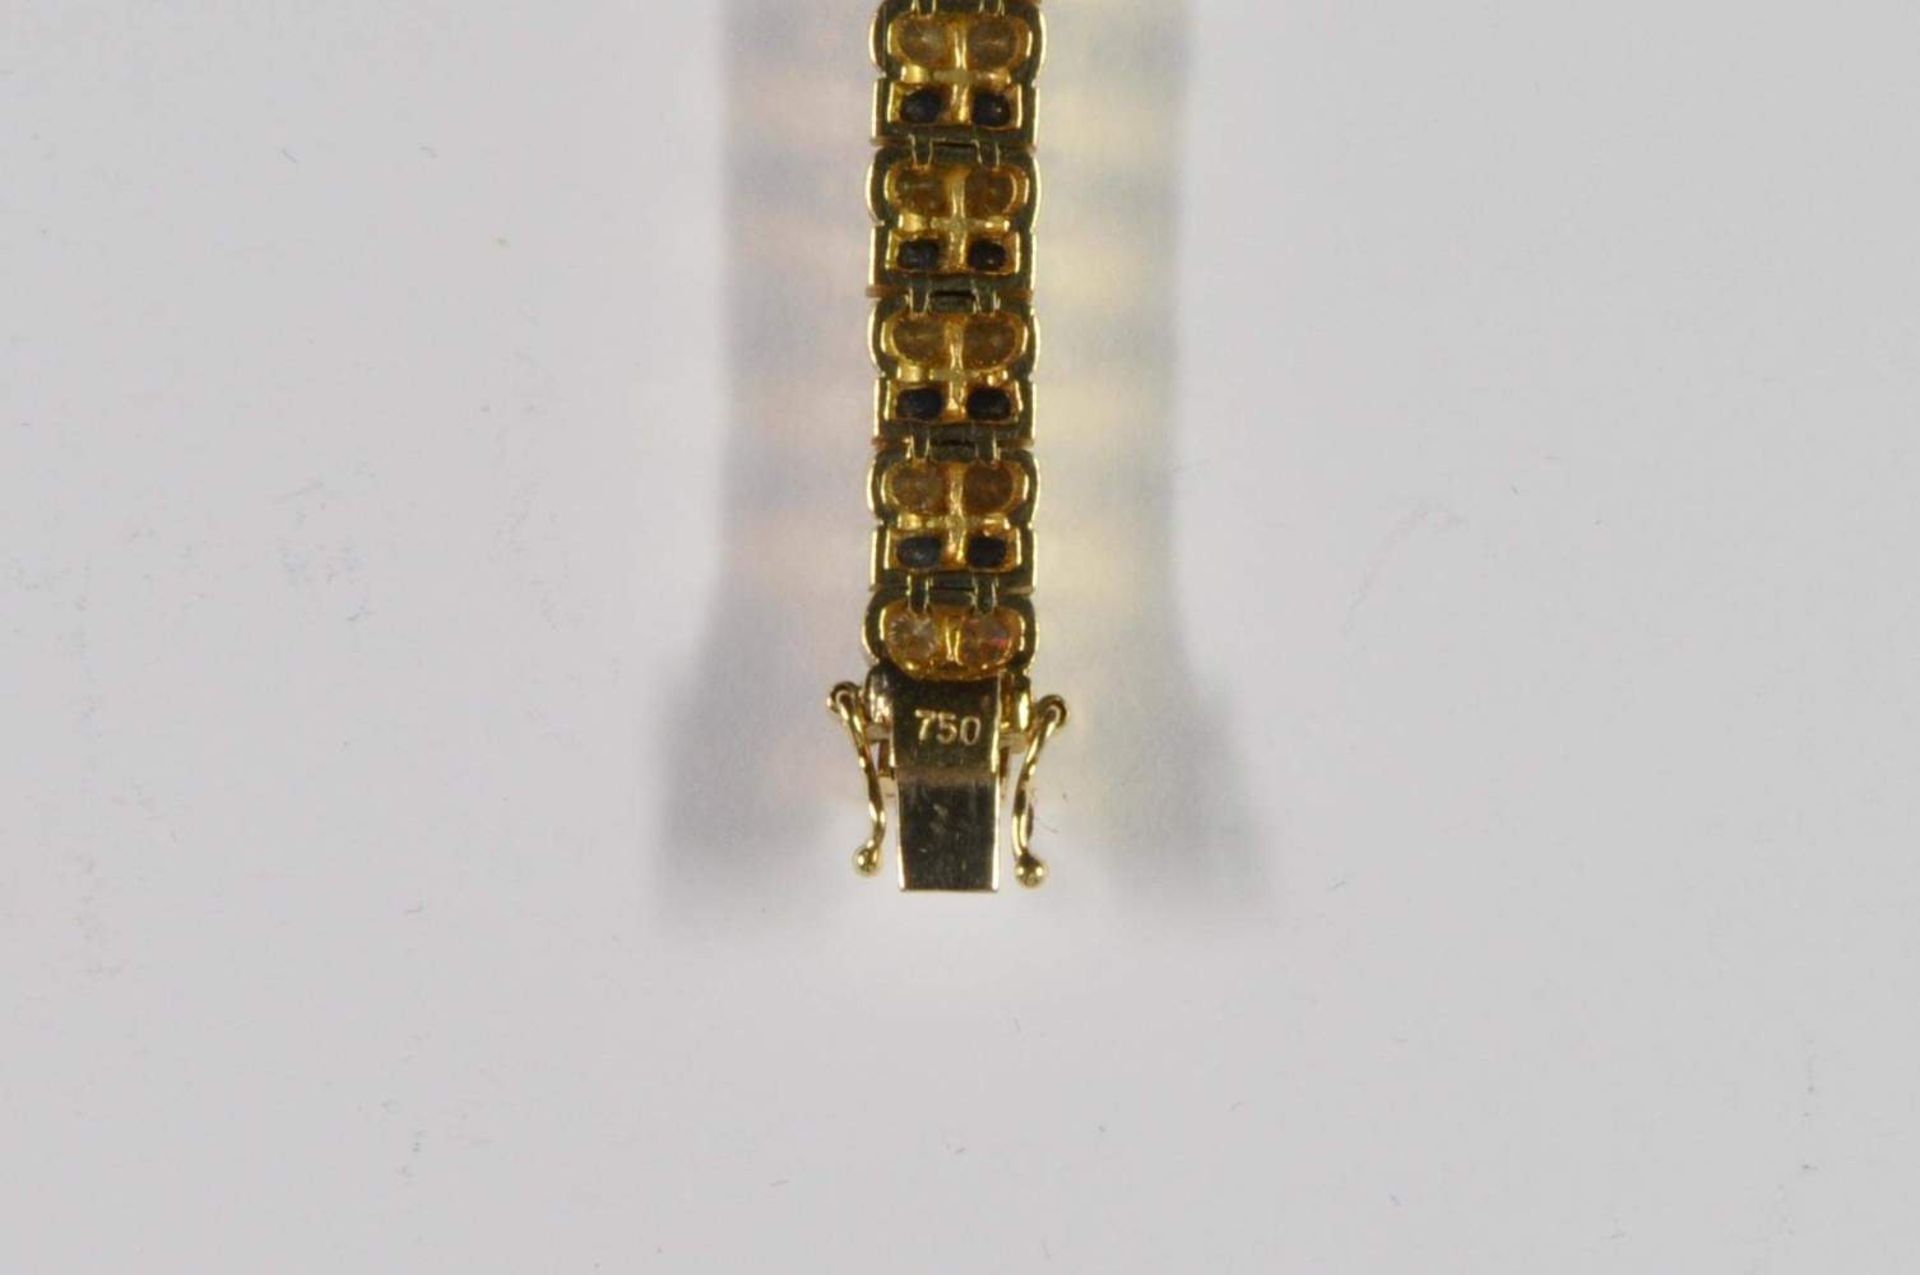 Saphir-Brillant-Armband, 750 Gelbgold, Punze, 66 Brillanten von zus. ca. 3,2ct, 64 Saphiren von zus. - Bild 11 aus 20